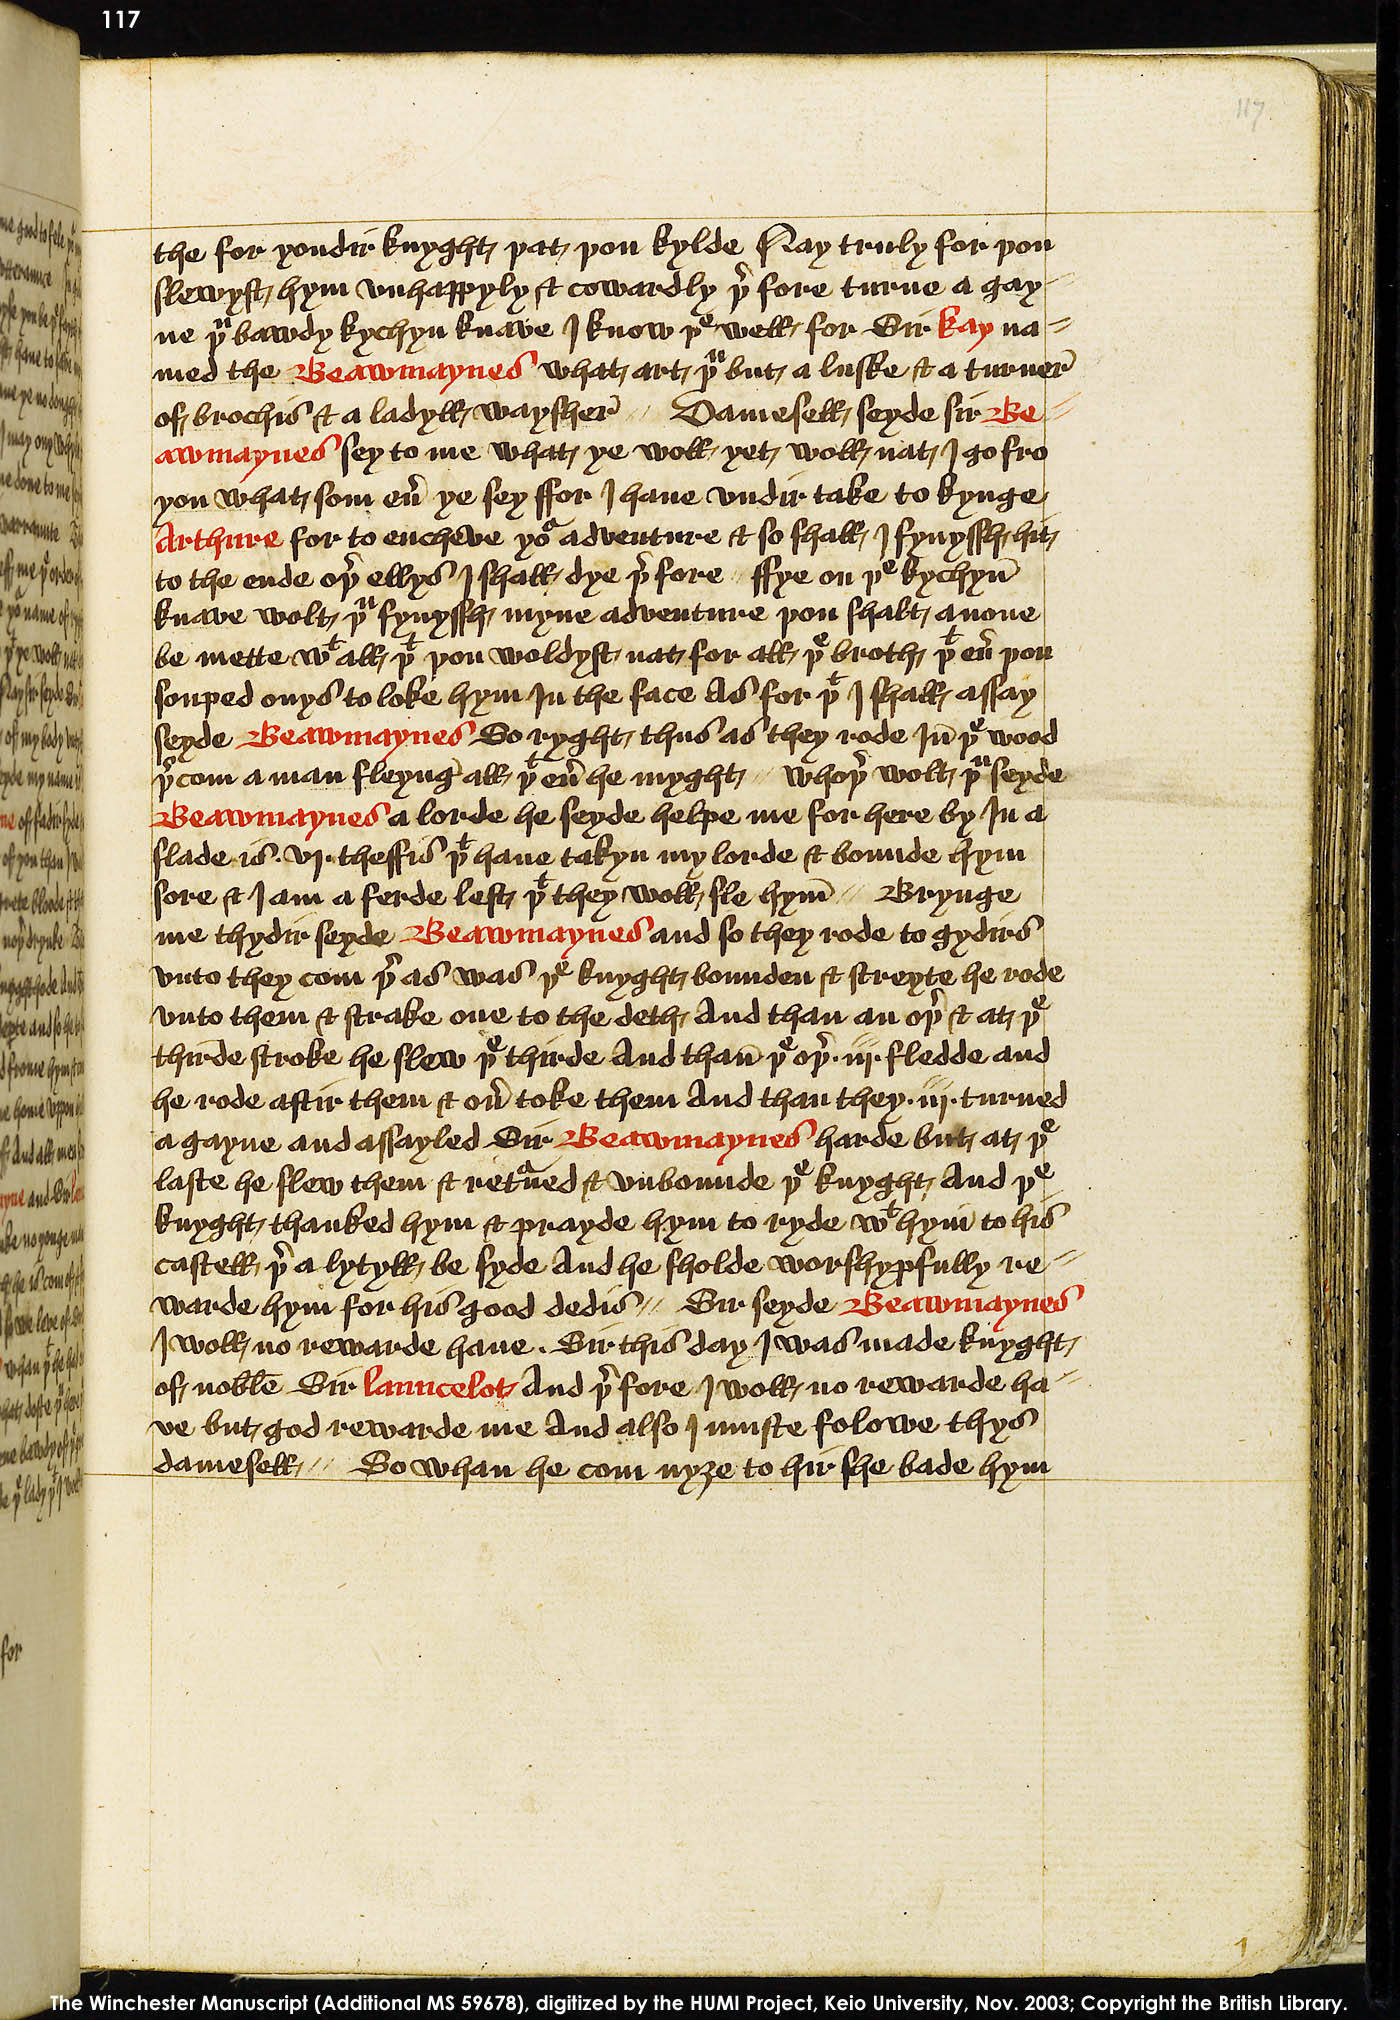 Folio 117r